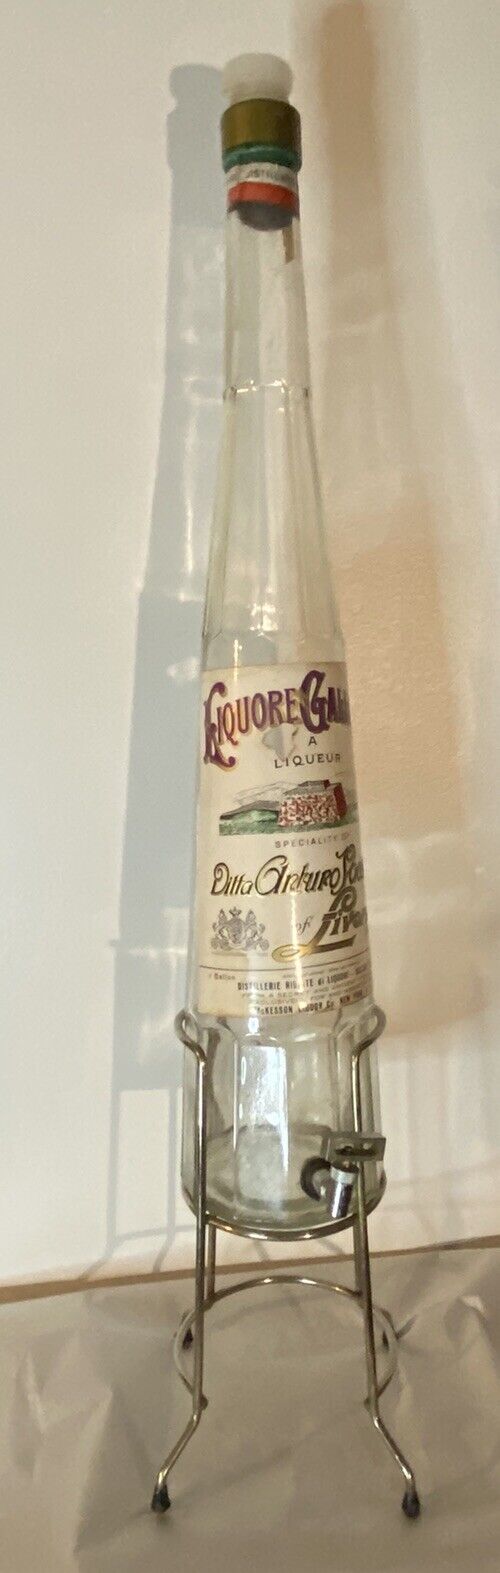 LIQUORE GALLIANO Glass Liquor Bottle 1 Gallon Spigot Spout Vintage Large Glass